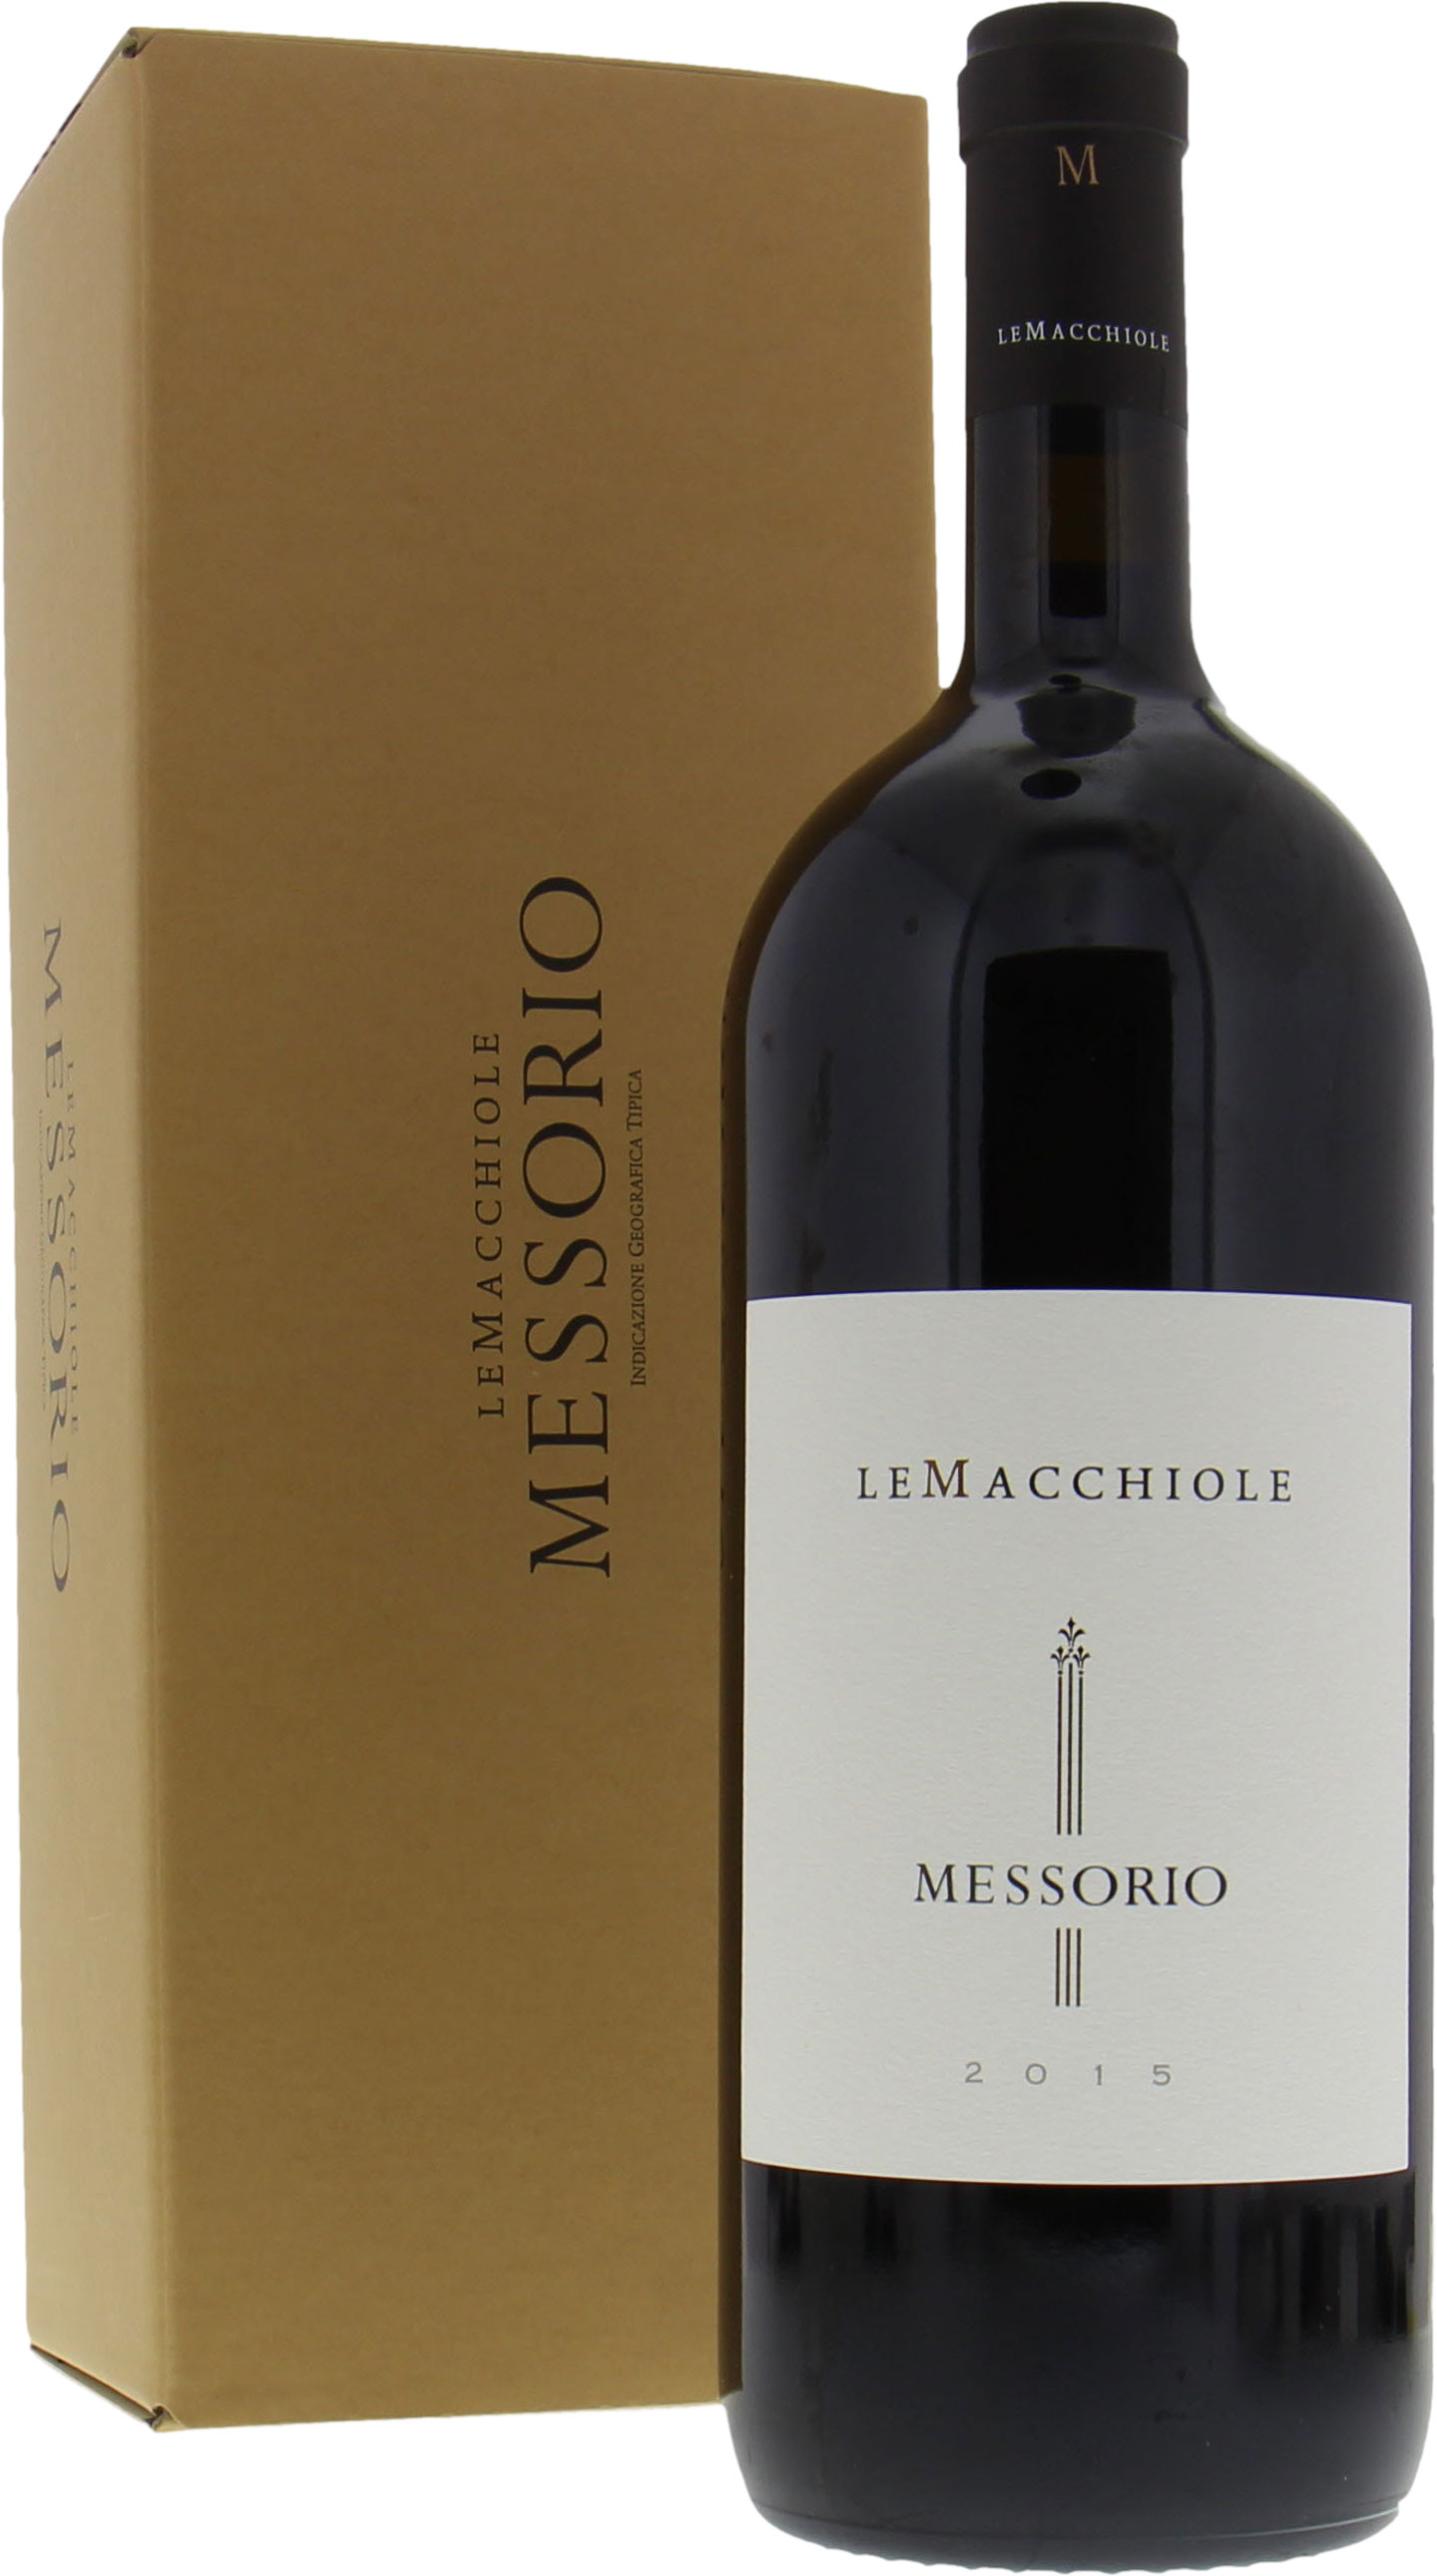 Le Macchiole - Messorio 2015 Perfect